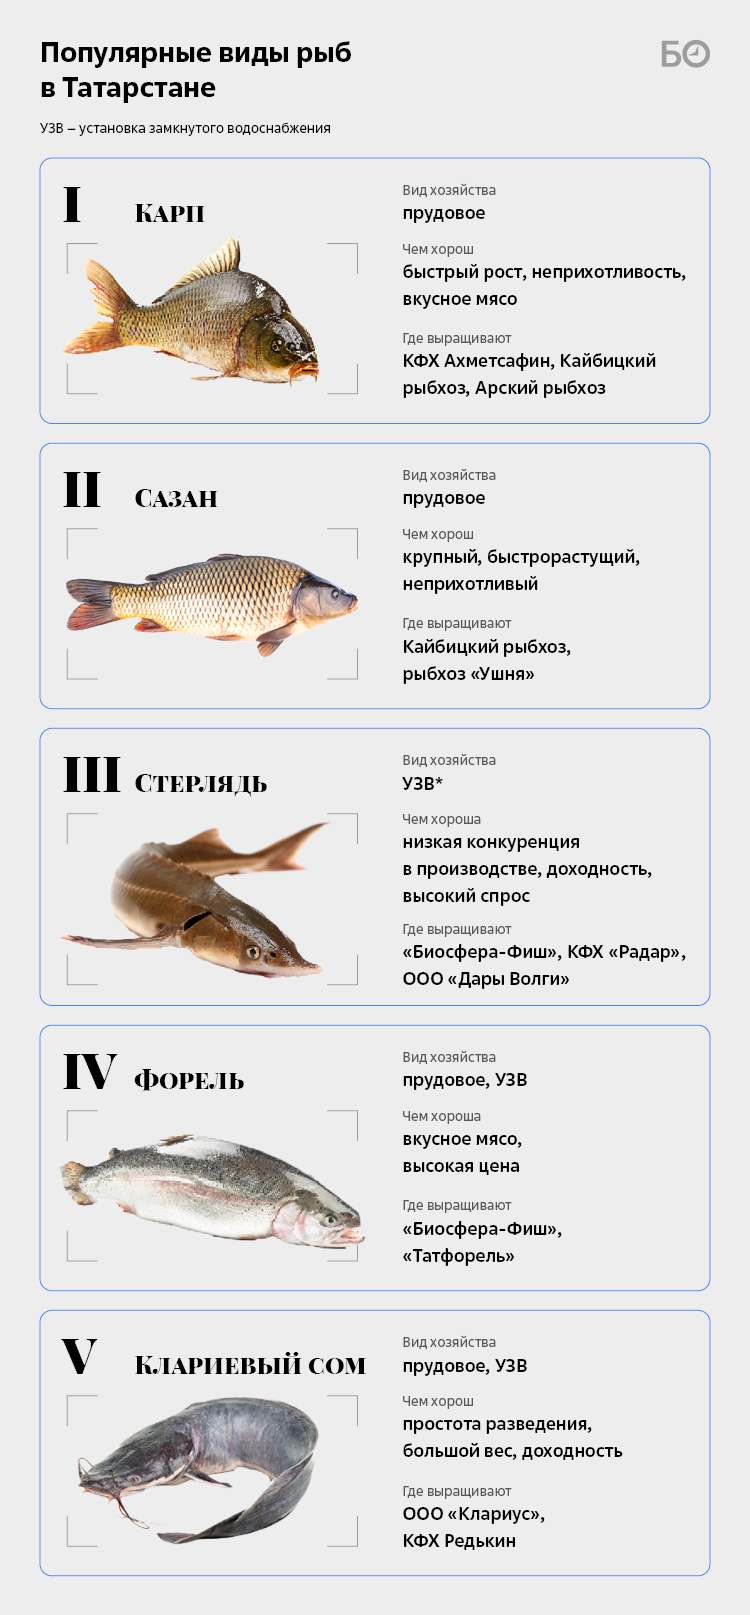 Свойства и особенности белого амура - речной или морской рыбы